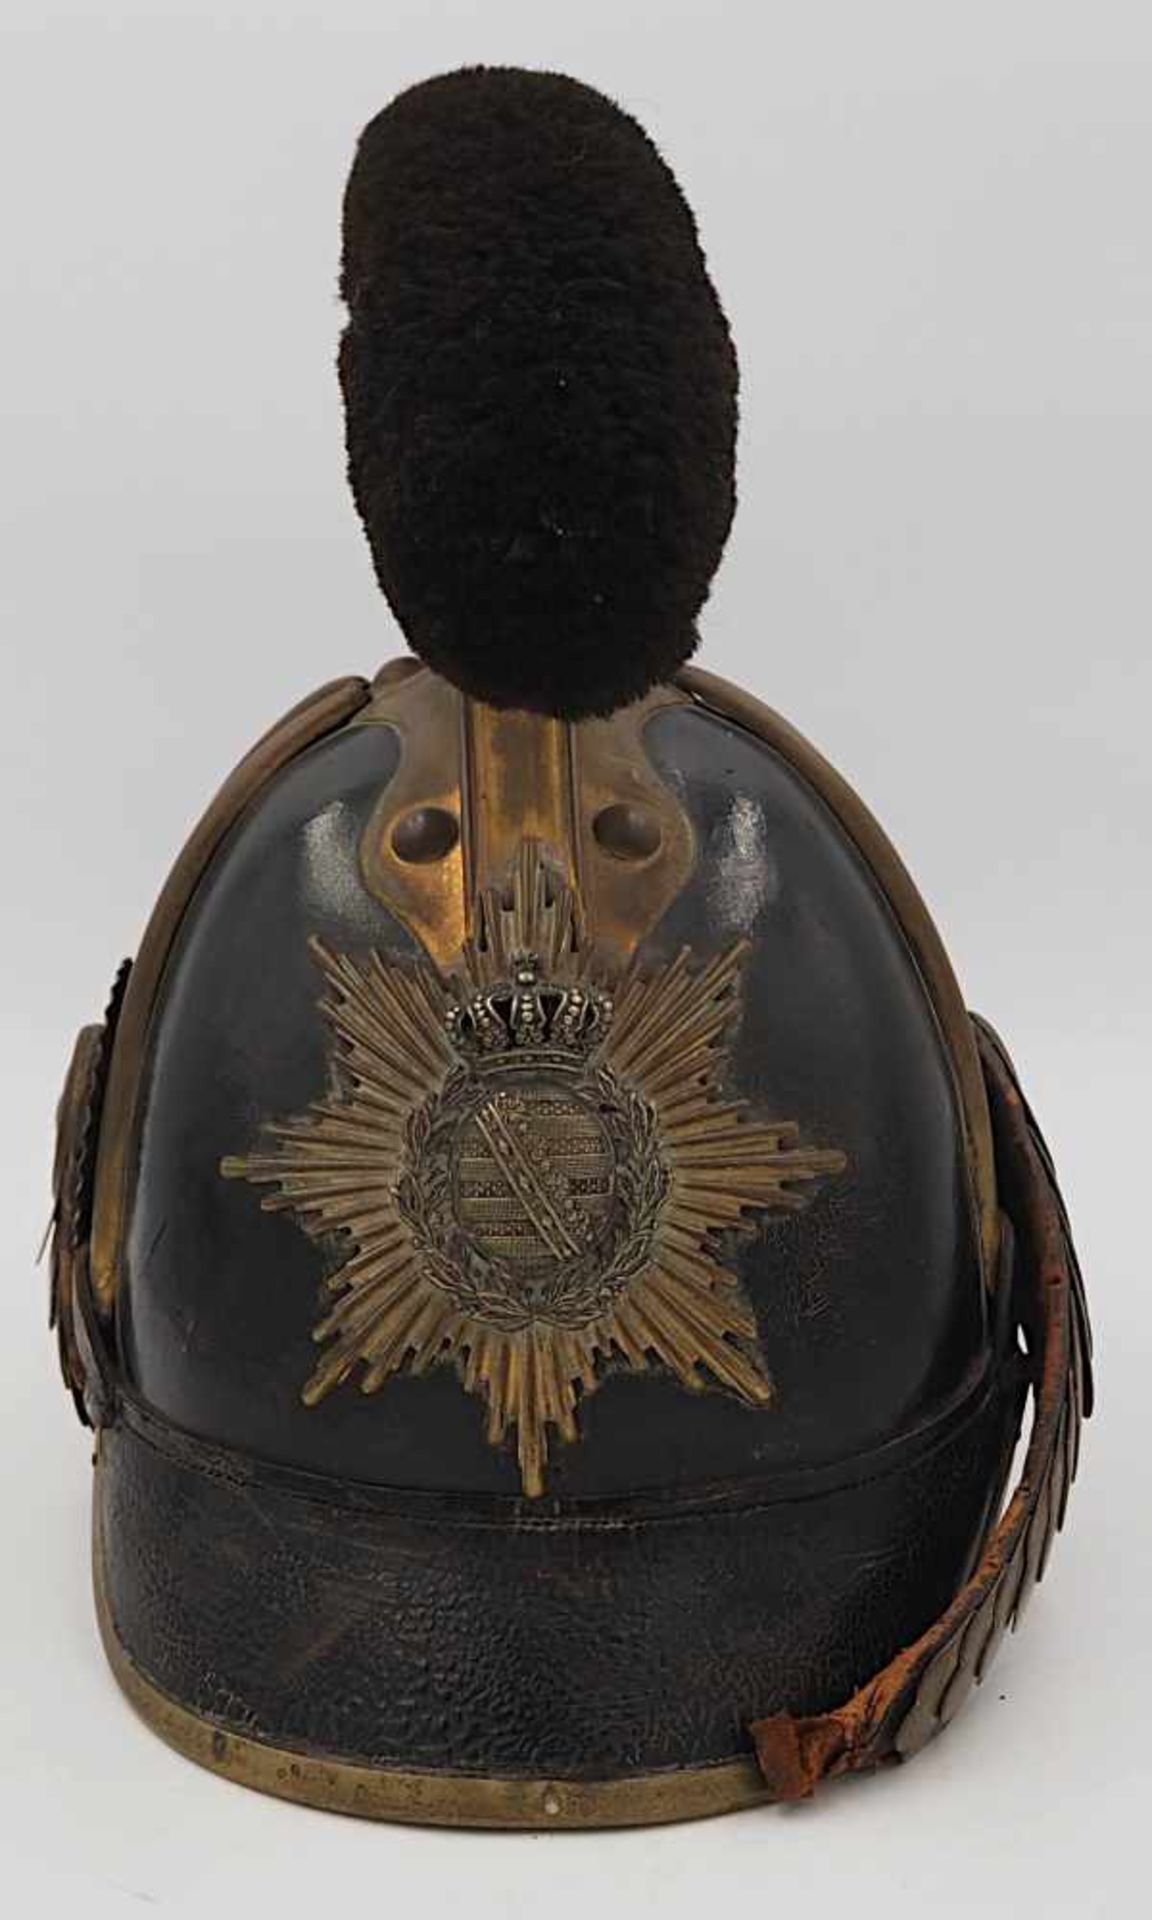 1 Raupen-Helm Modell 1867 für Sächsisches Reiter-Regiment, wohl Ende 19. Jh.schwerer